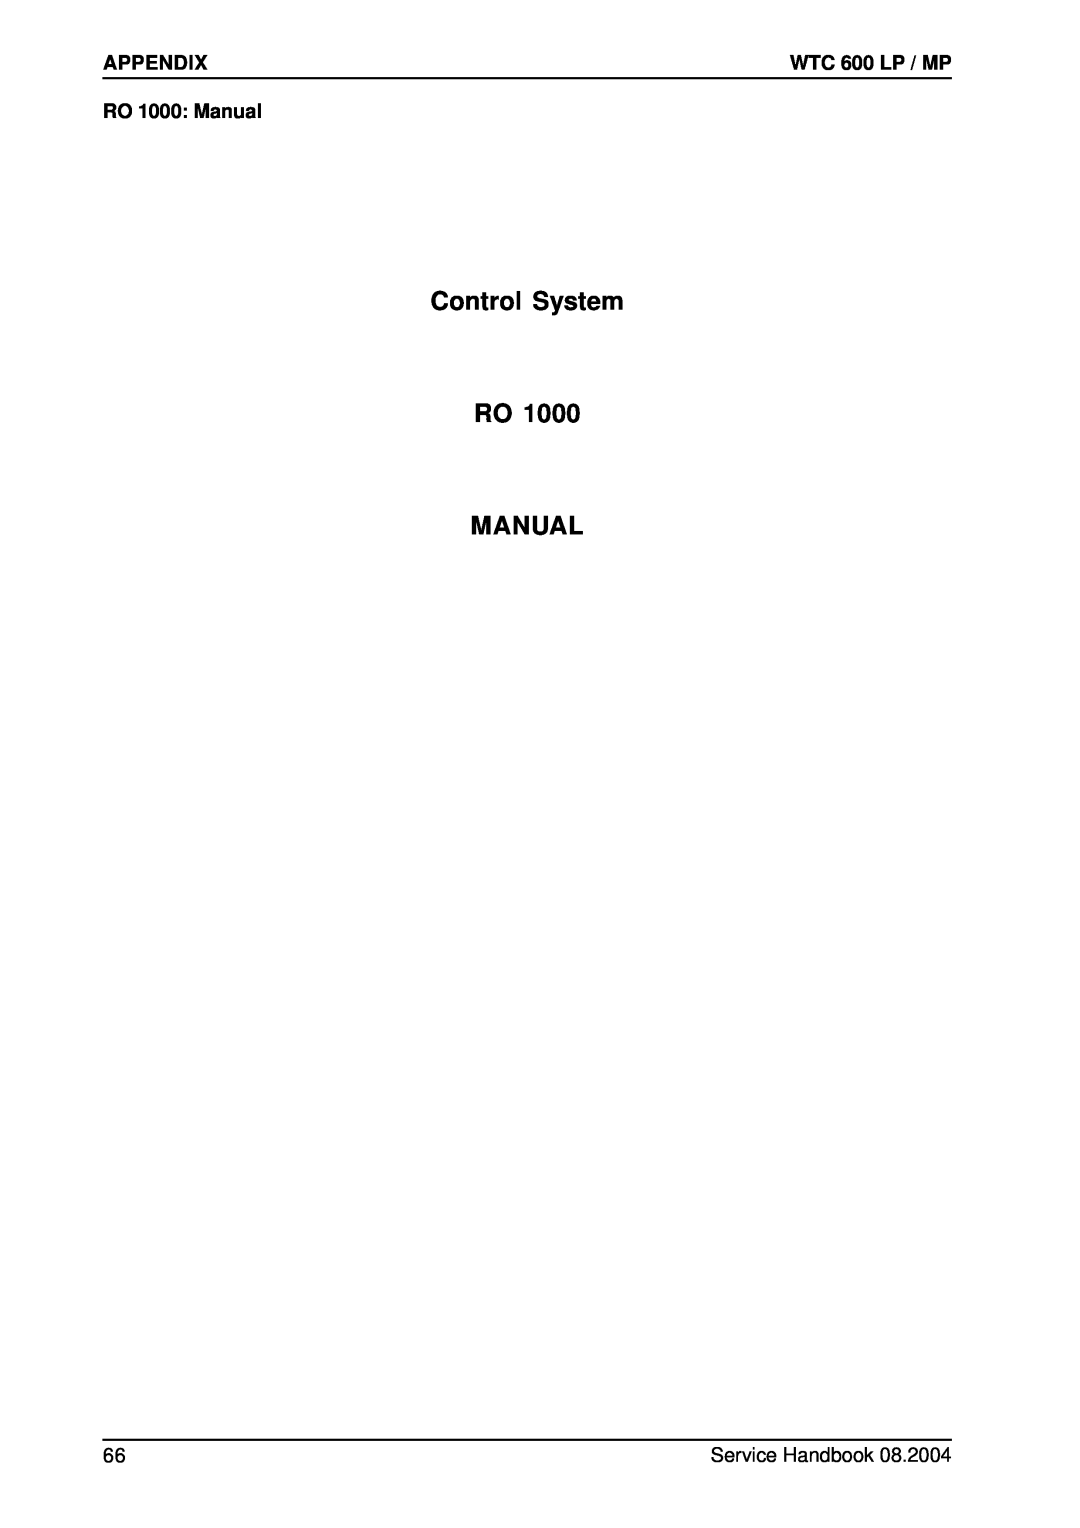 Karcher 600 CD manual Control System RO MANUAL, Appendix, RO 1000 Manual, WTC 600 LP / MP 